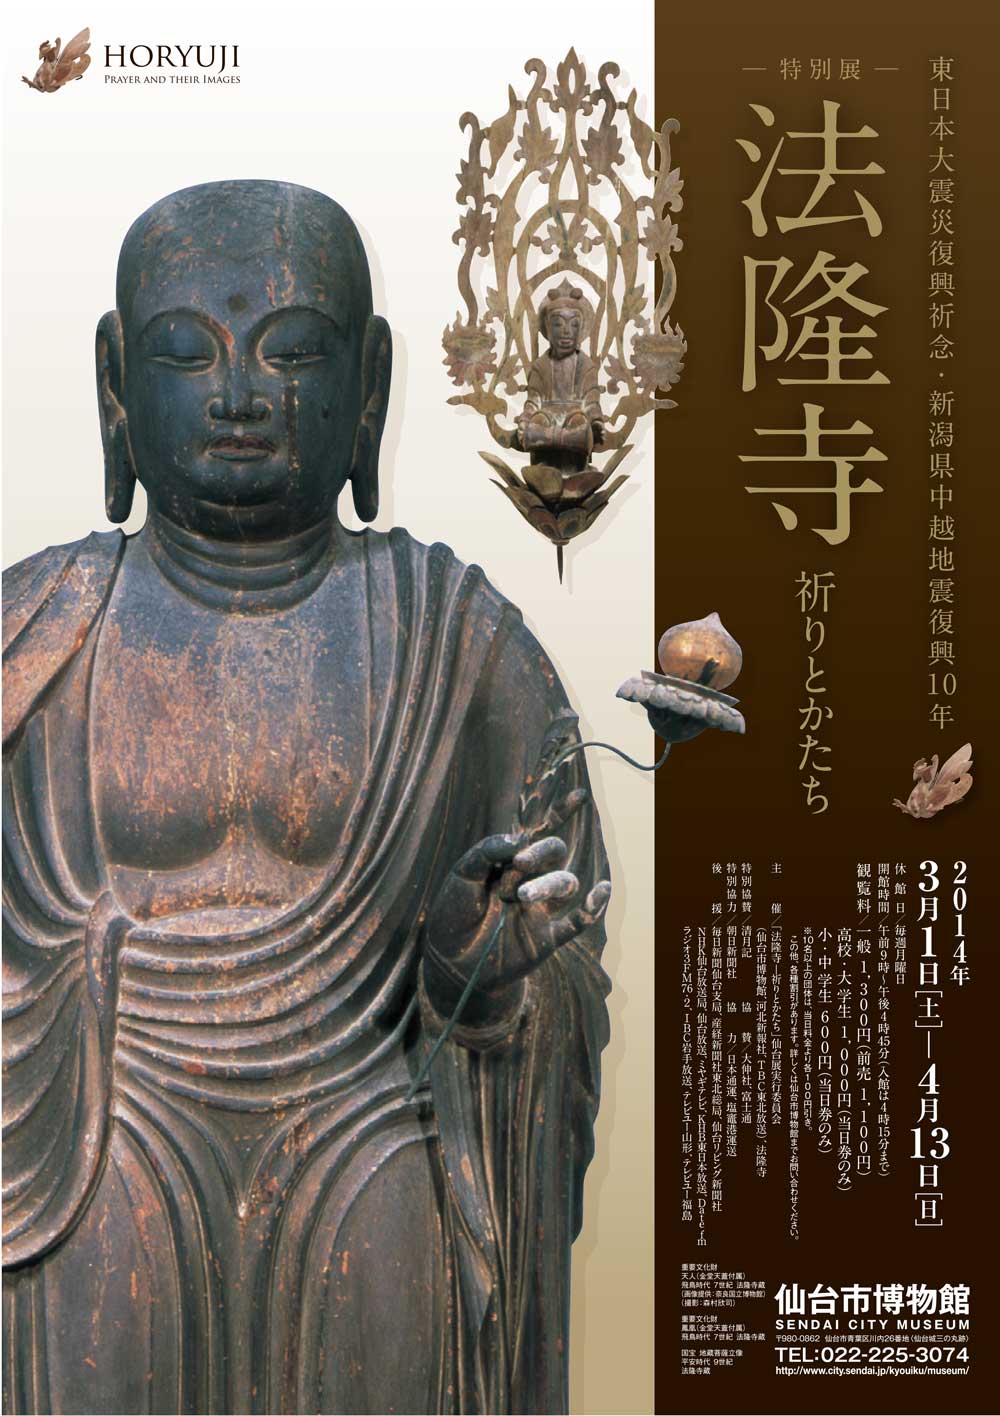 清月記は、仙台市博物館開催「特別展 法隆寺展」特別協賛して